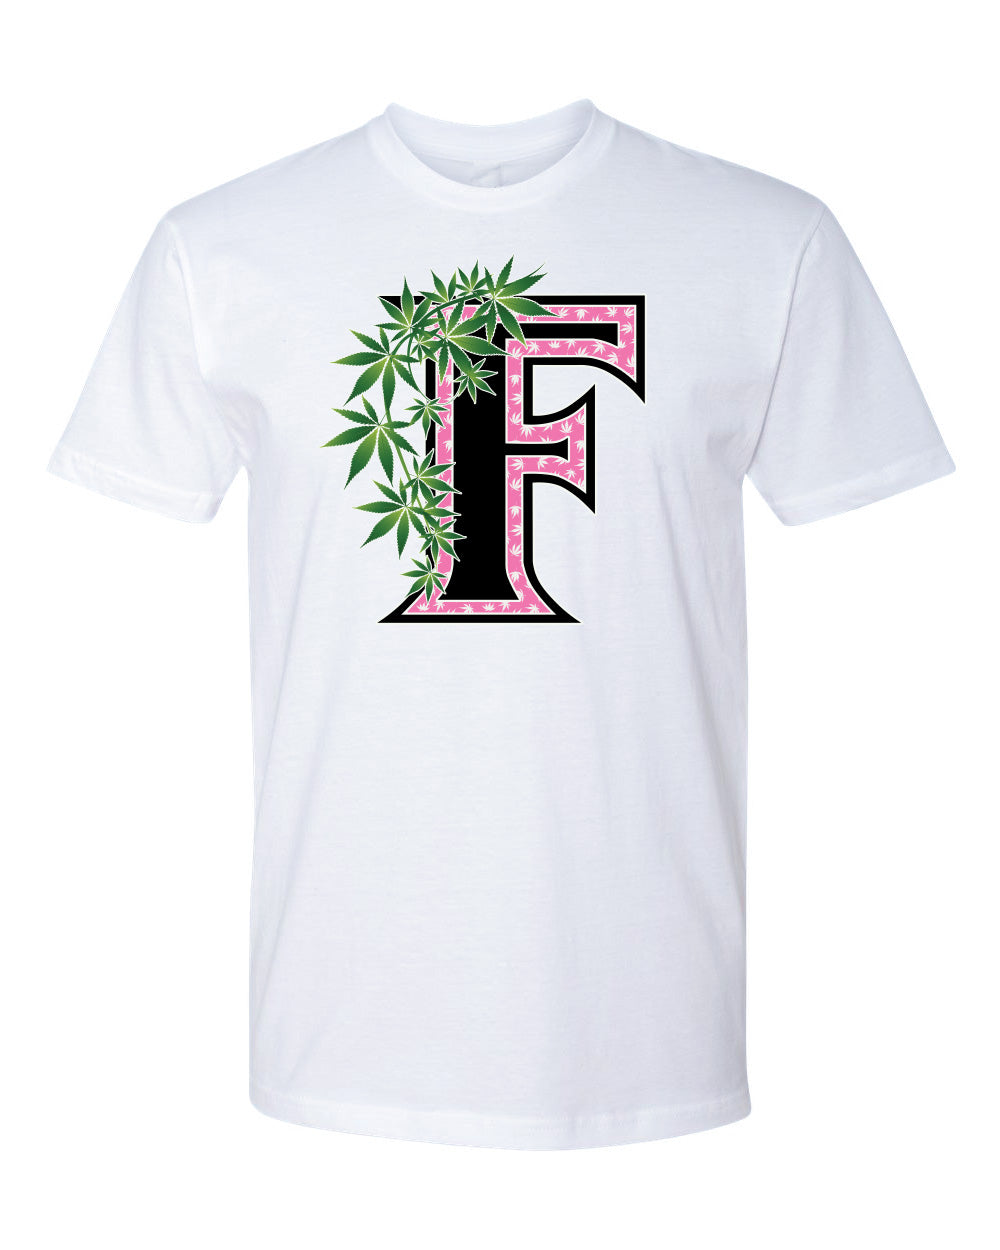 Flee Farms F Pink logo Tshirt